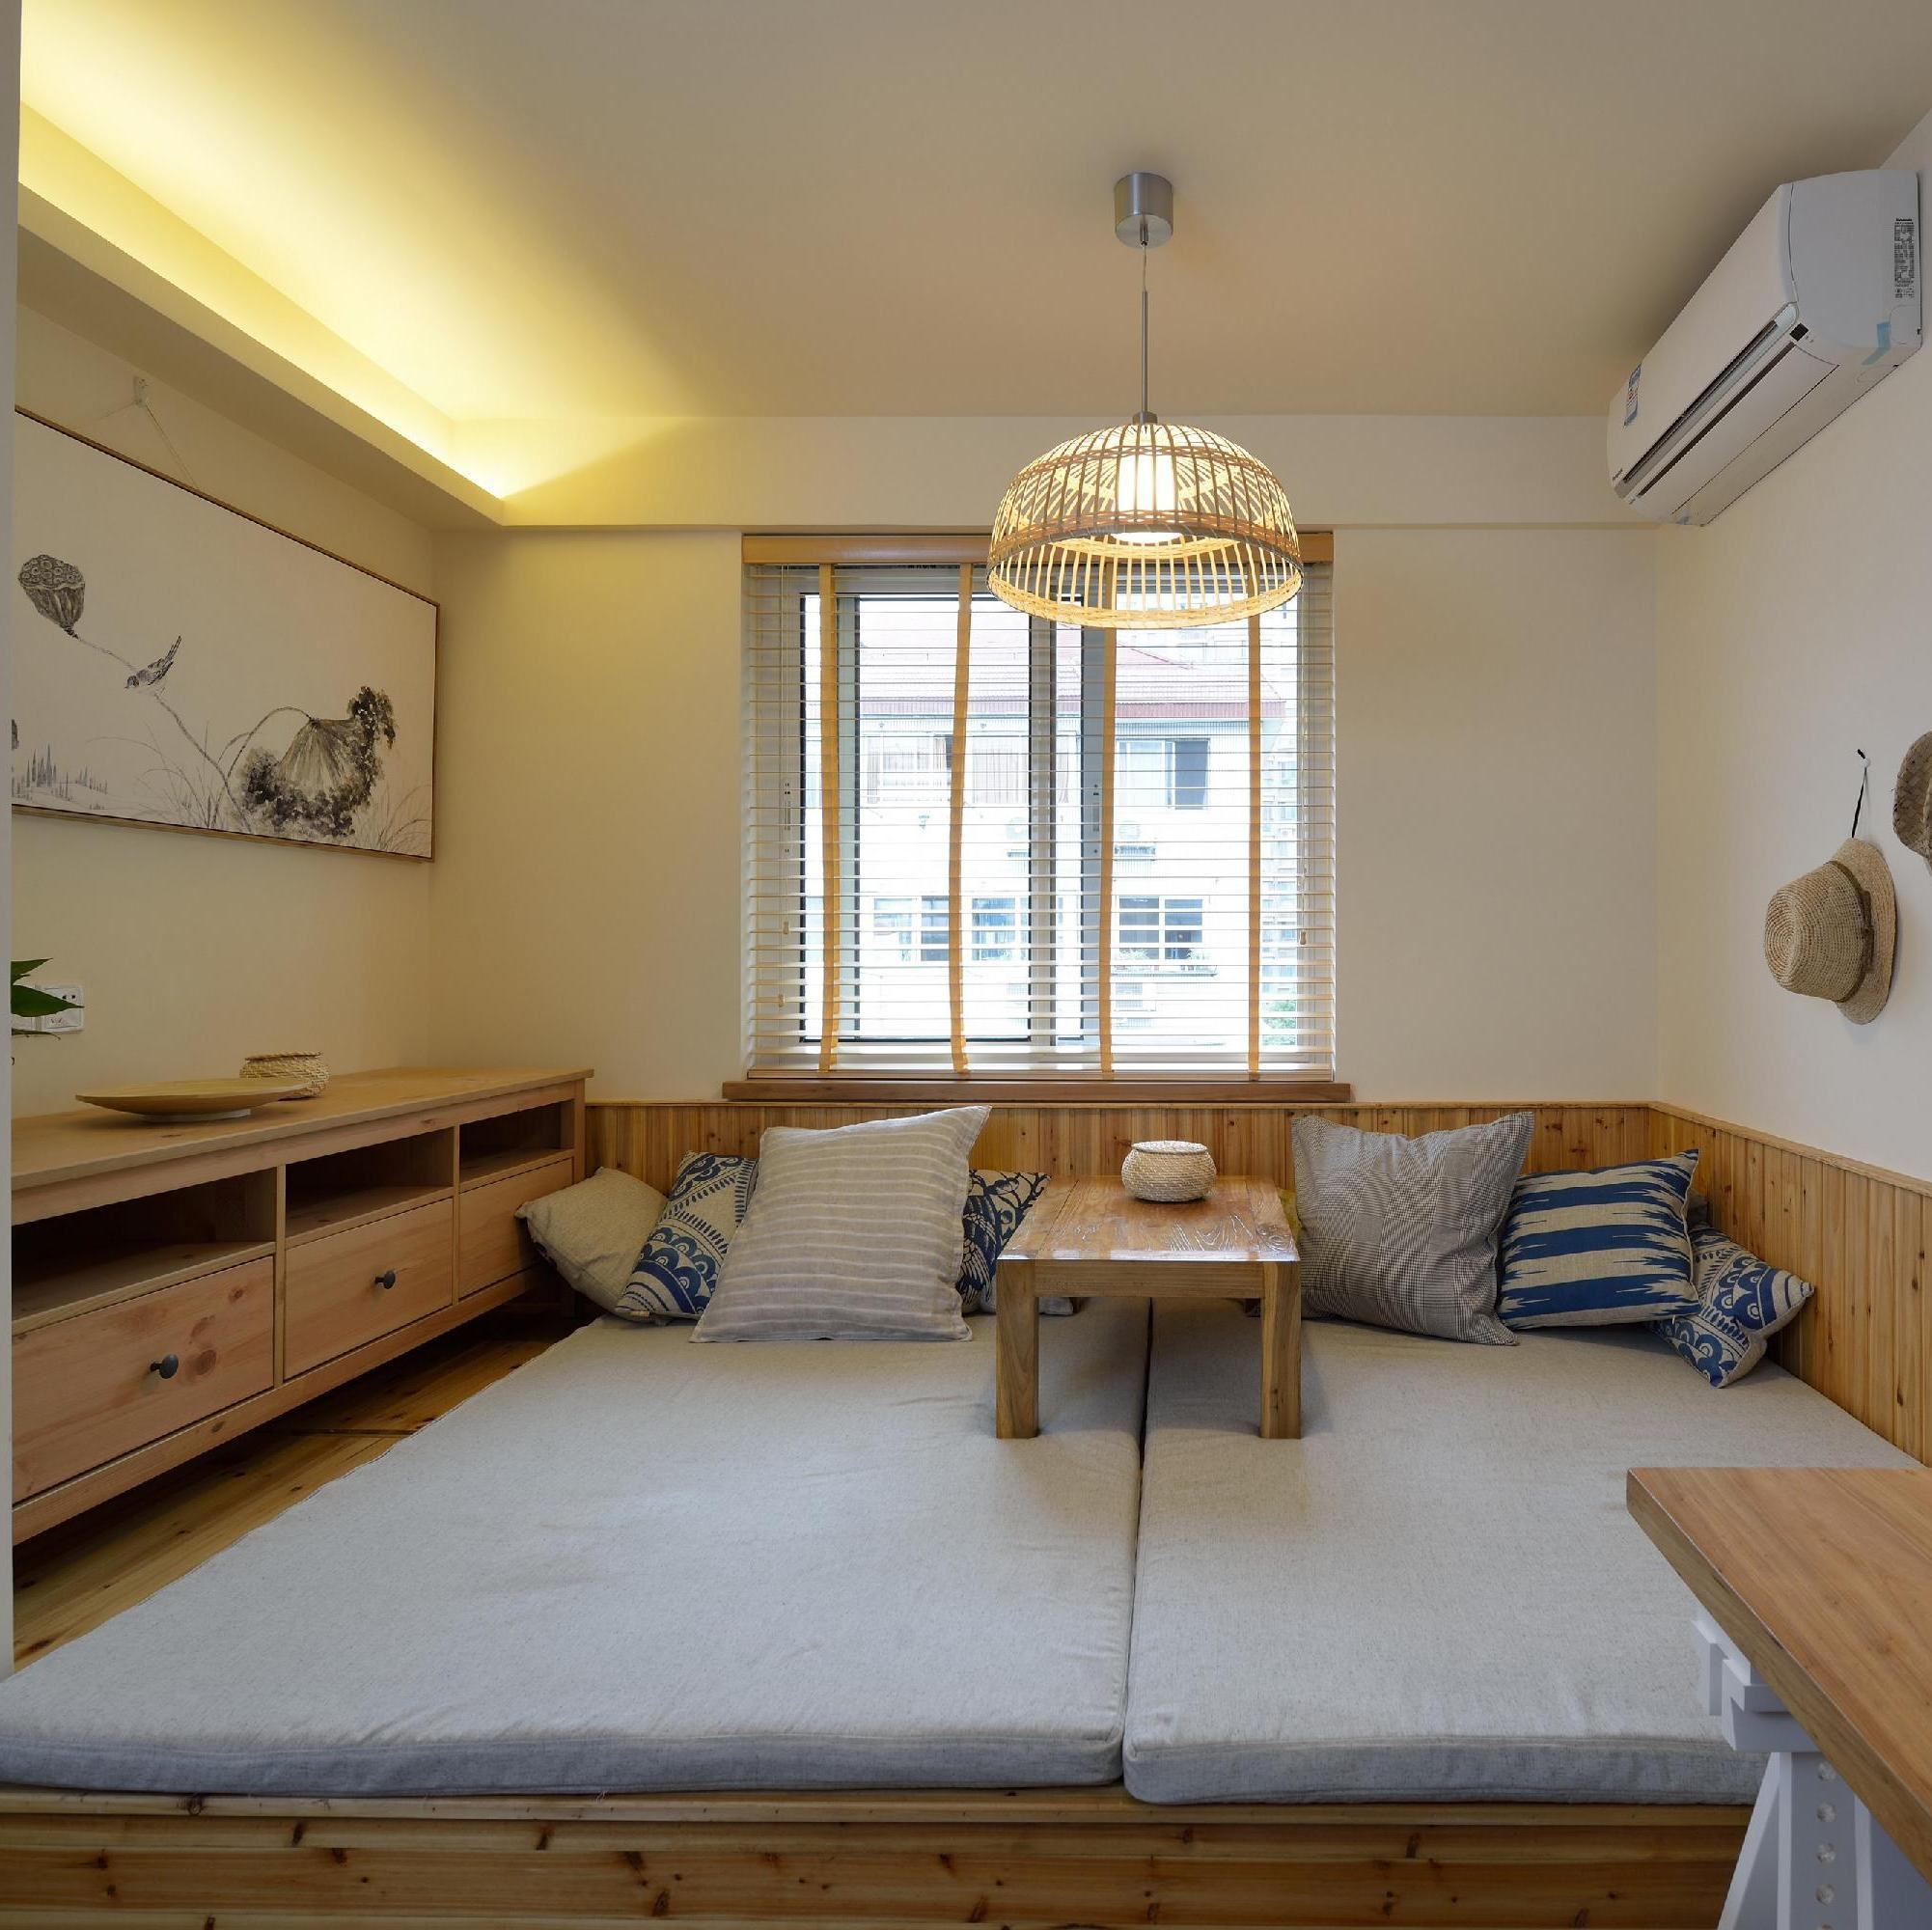 两居室日式风格家榻榻米床设计70㎡北欧二居装修榻榻米床设计110㎡